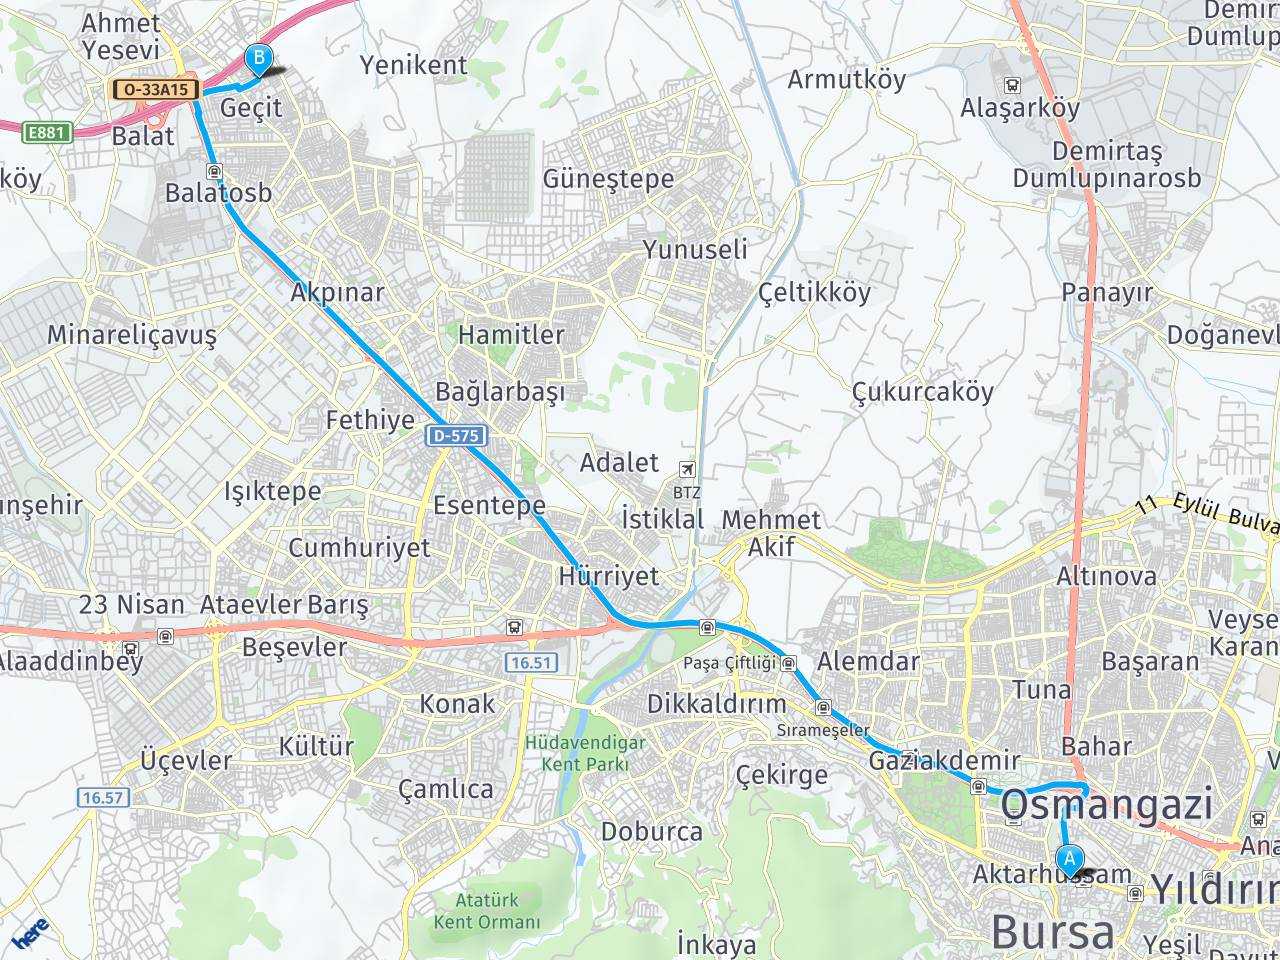 Bursa Gebze bursa haritası